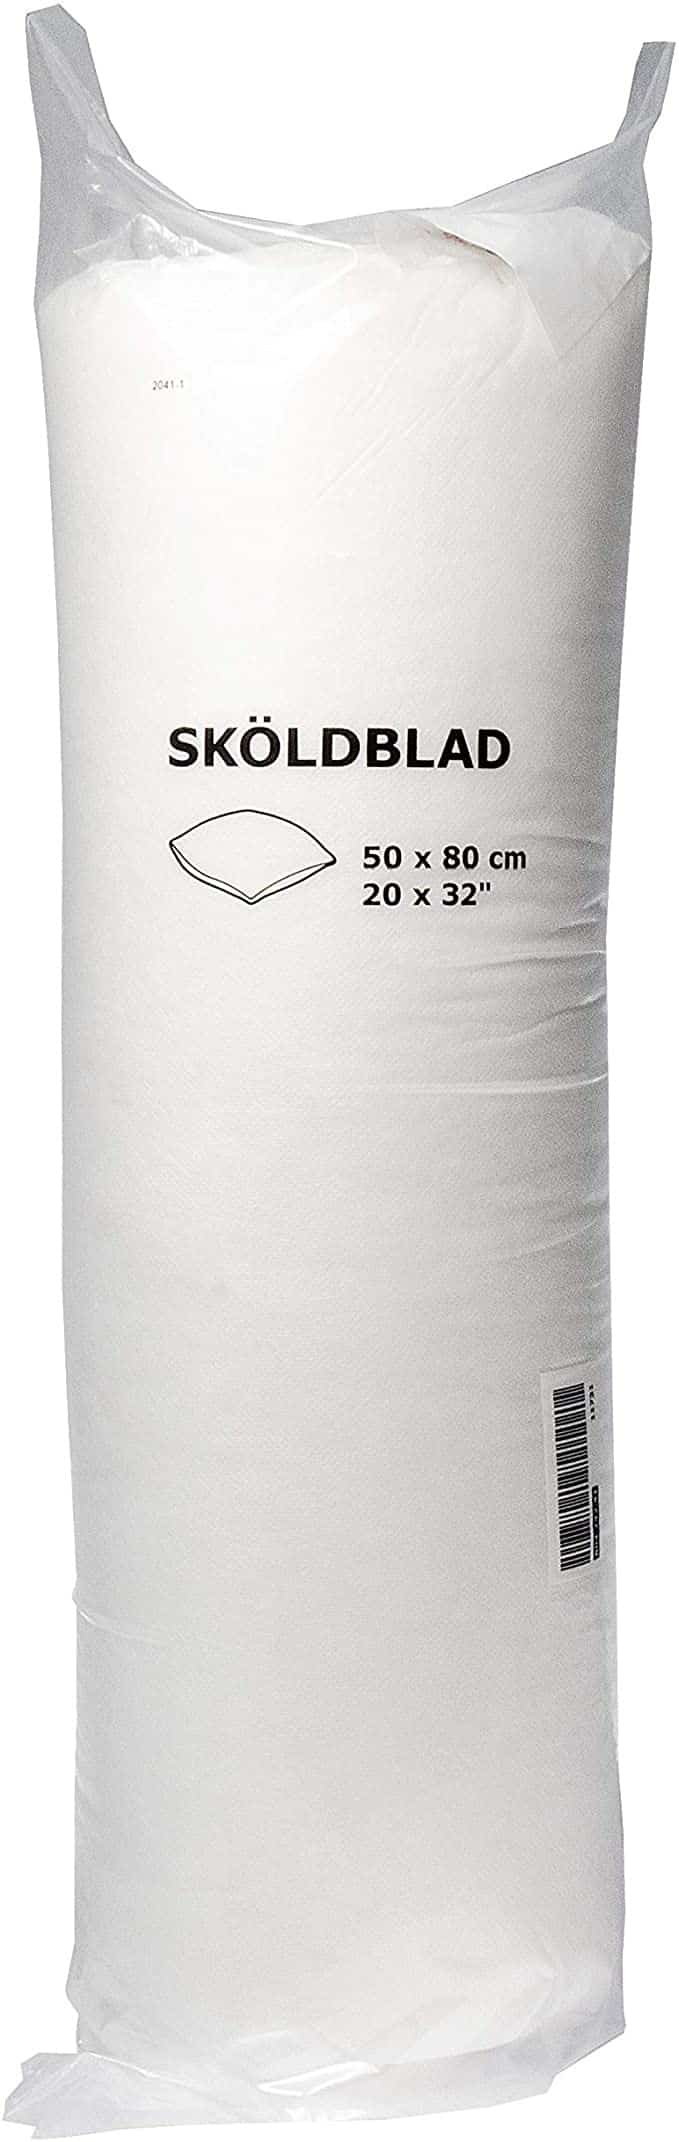 IKEA Skoldblad Oreiller léger 50 x 80 cm